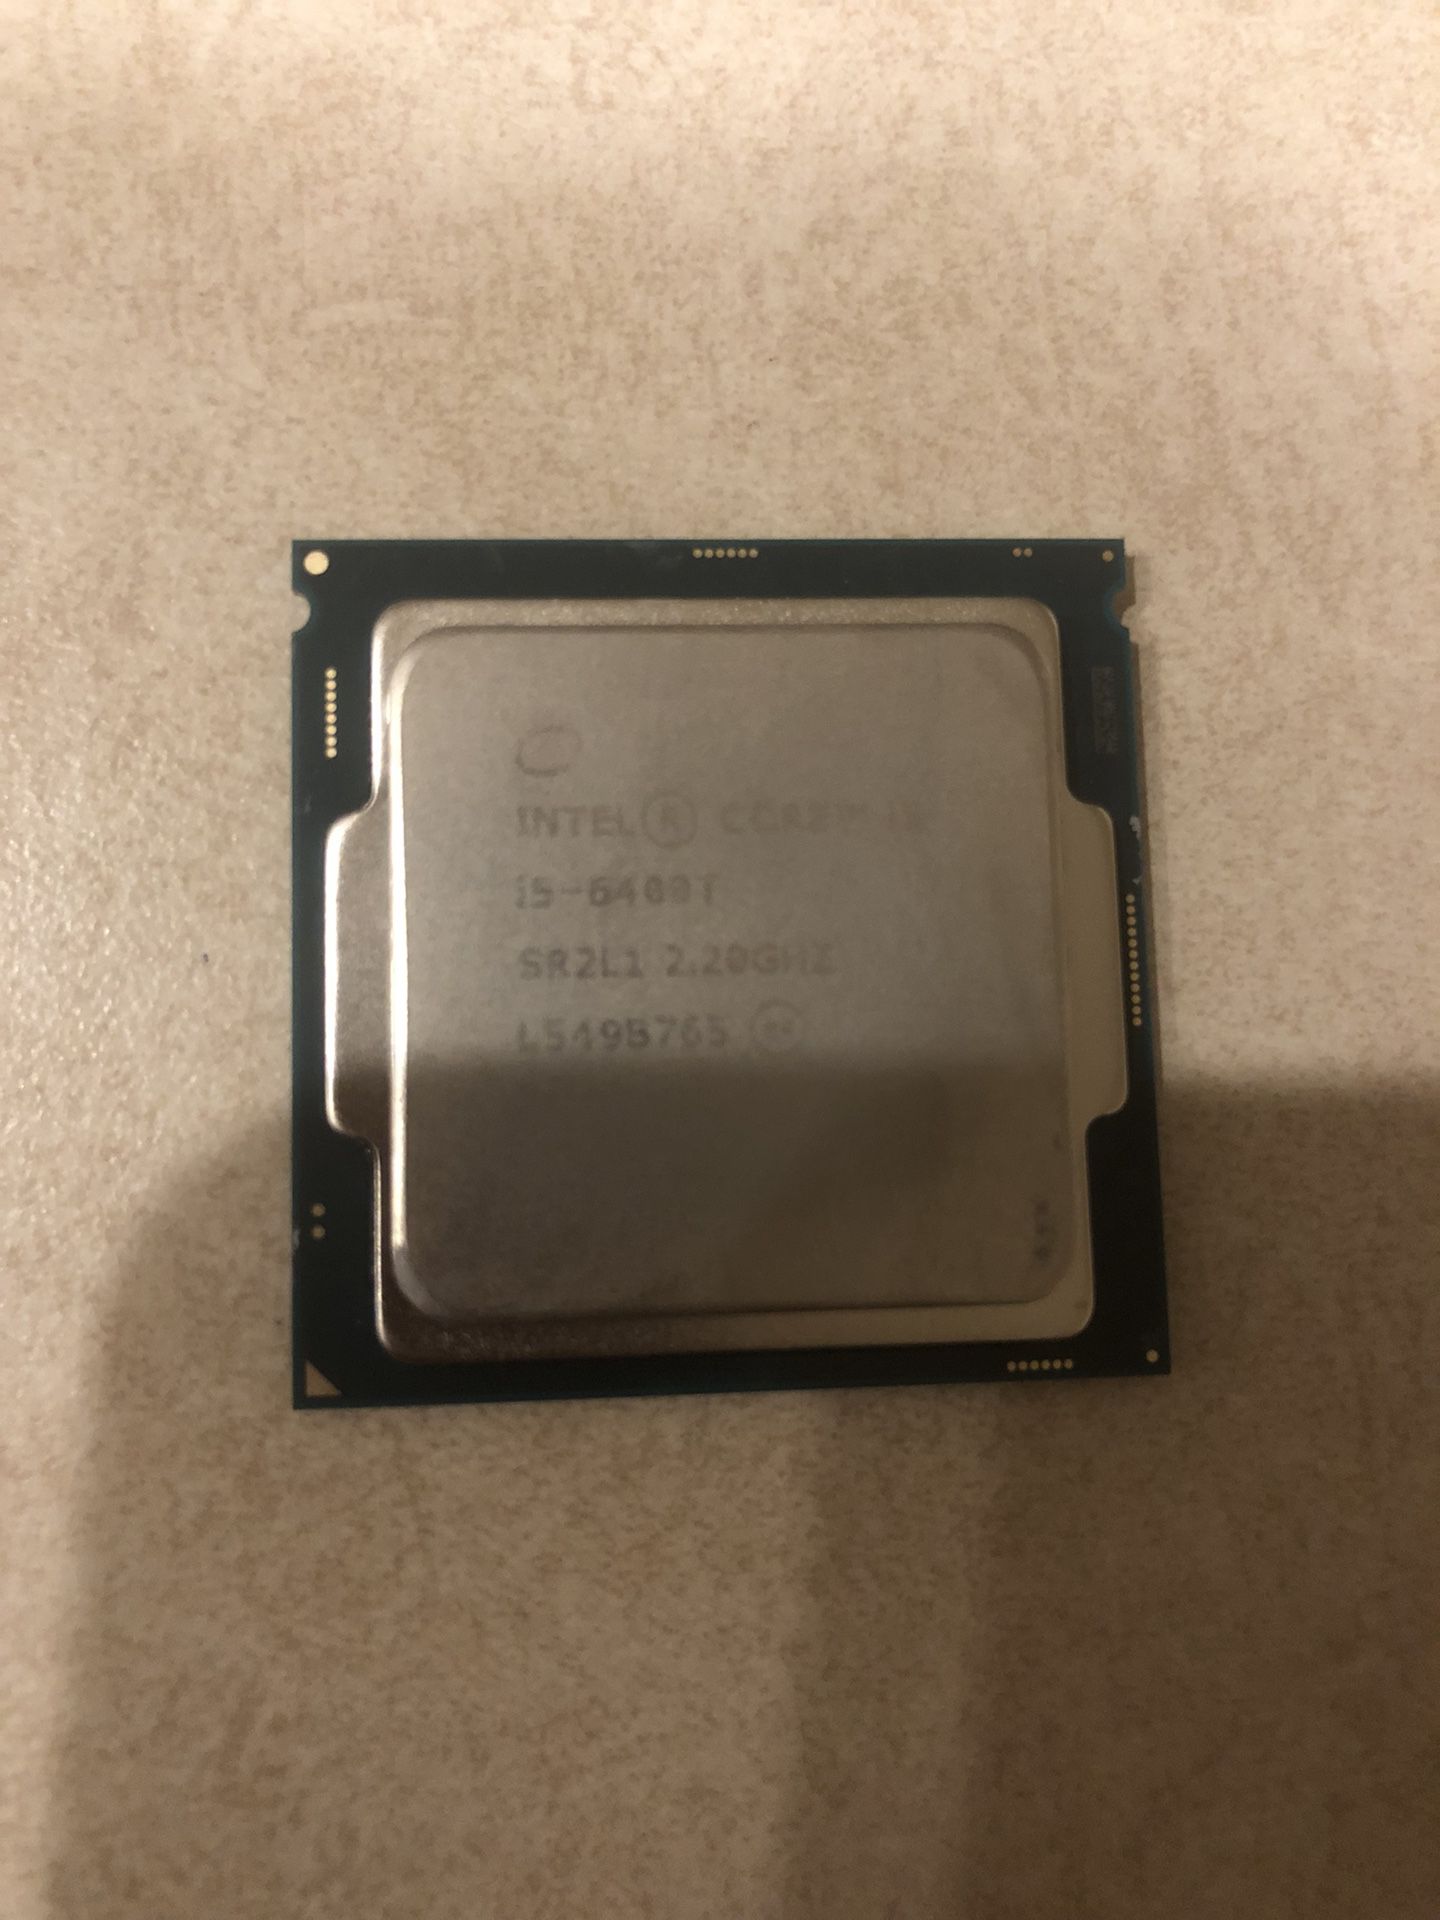 Intel core i5 6400T